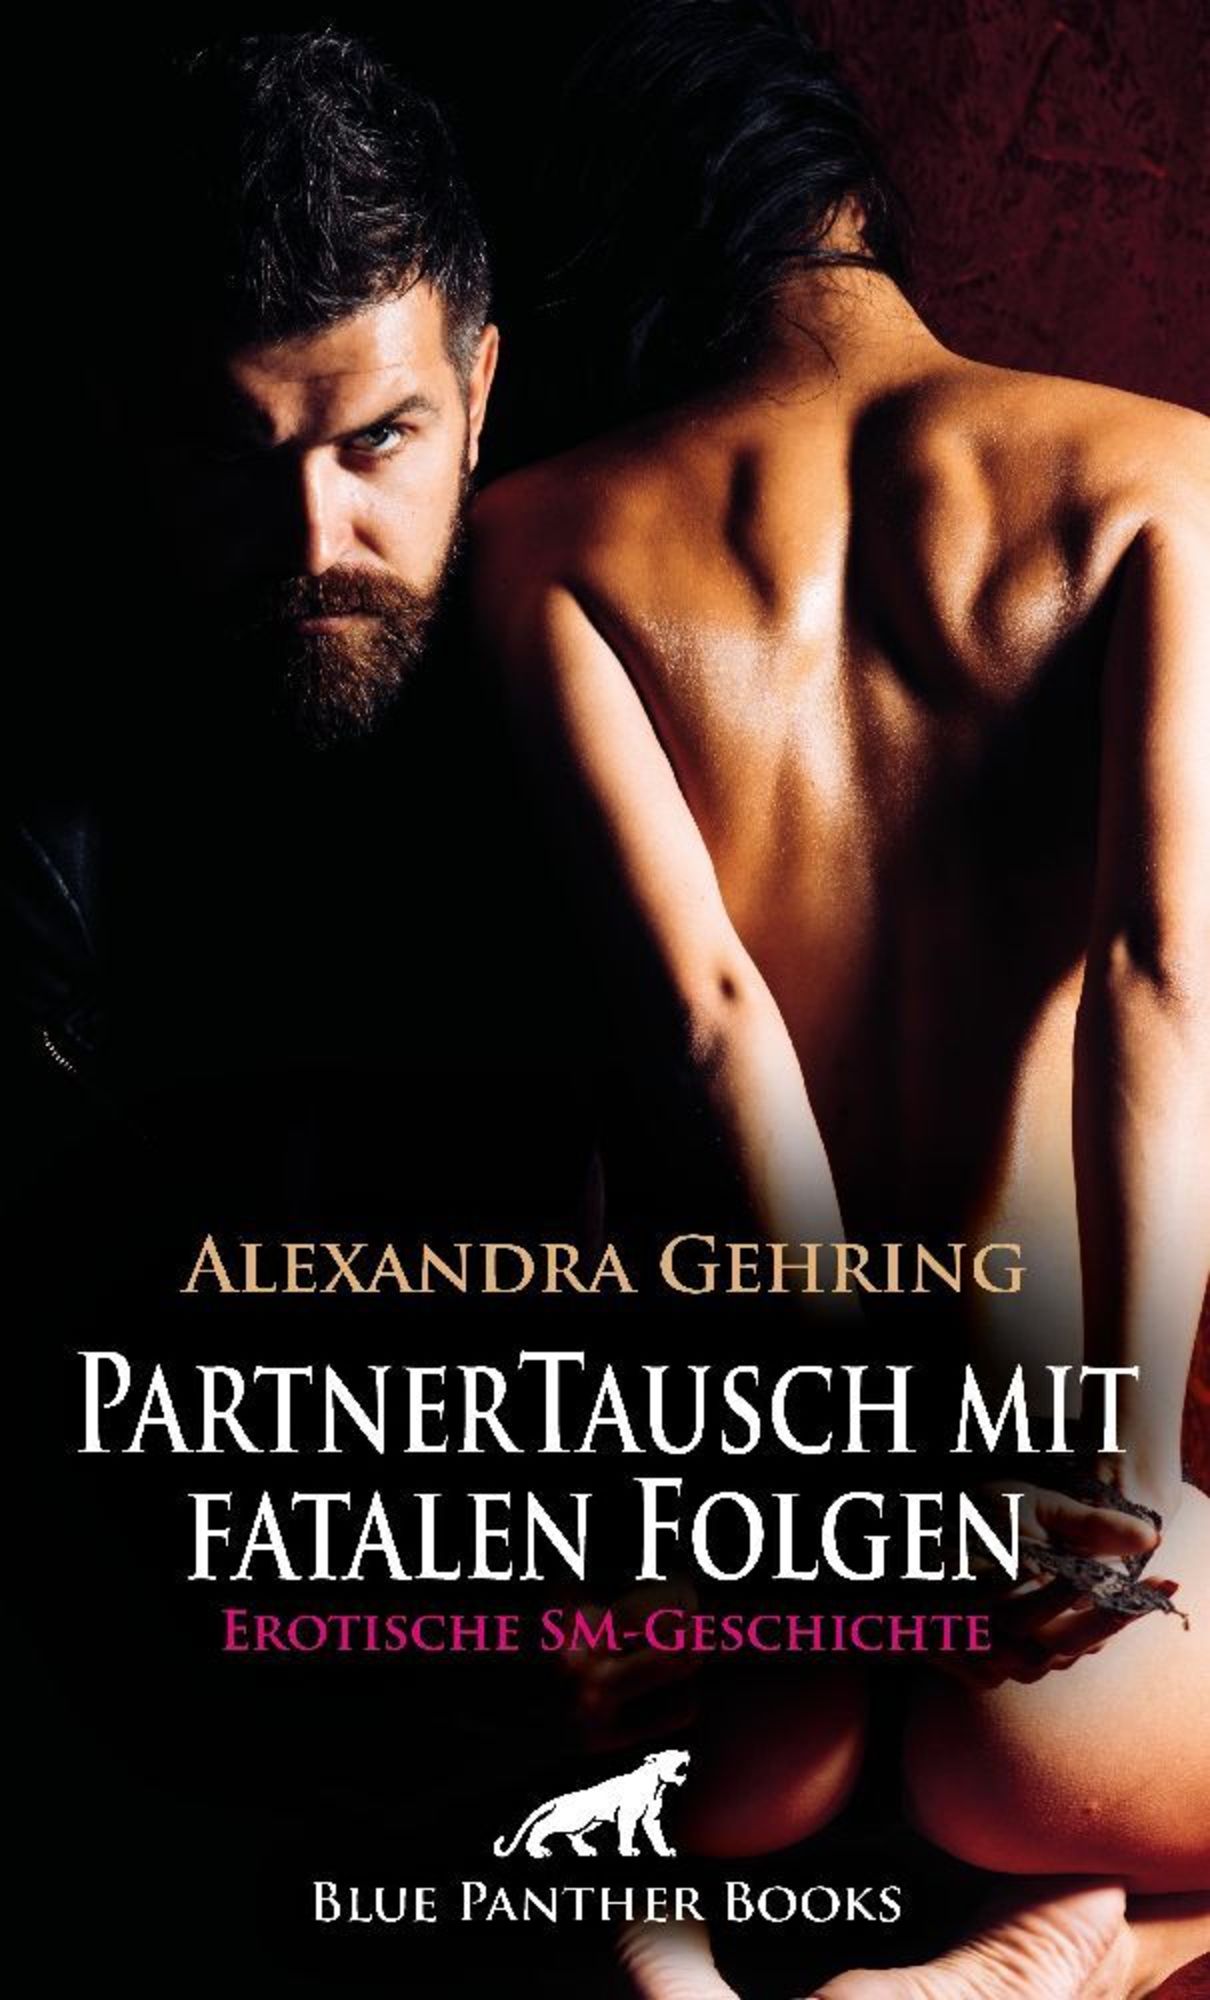 PartnerTausch mit fatalen Folgen | Erotische SM-Geschichte + 1 weitere  Geschichte' von 'Alexandra Gehring' - Buch - '978-3-7561-5341-1'